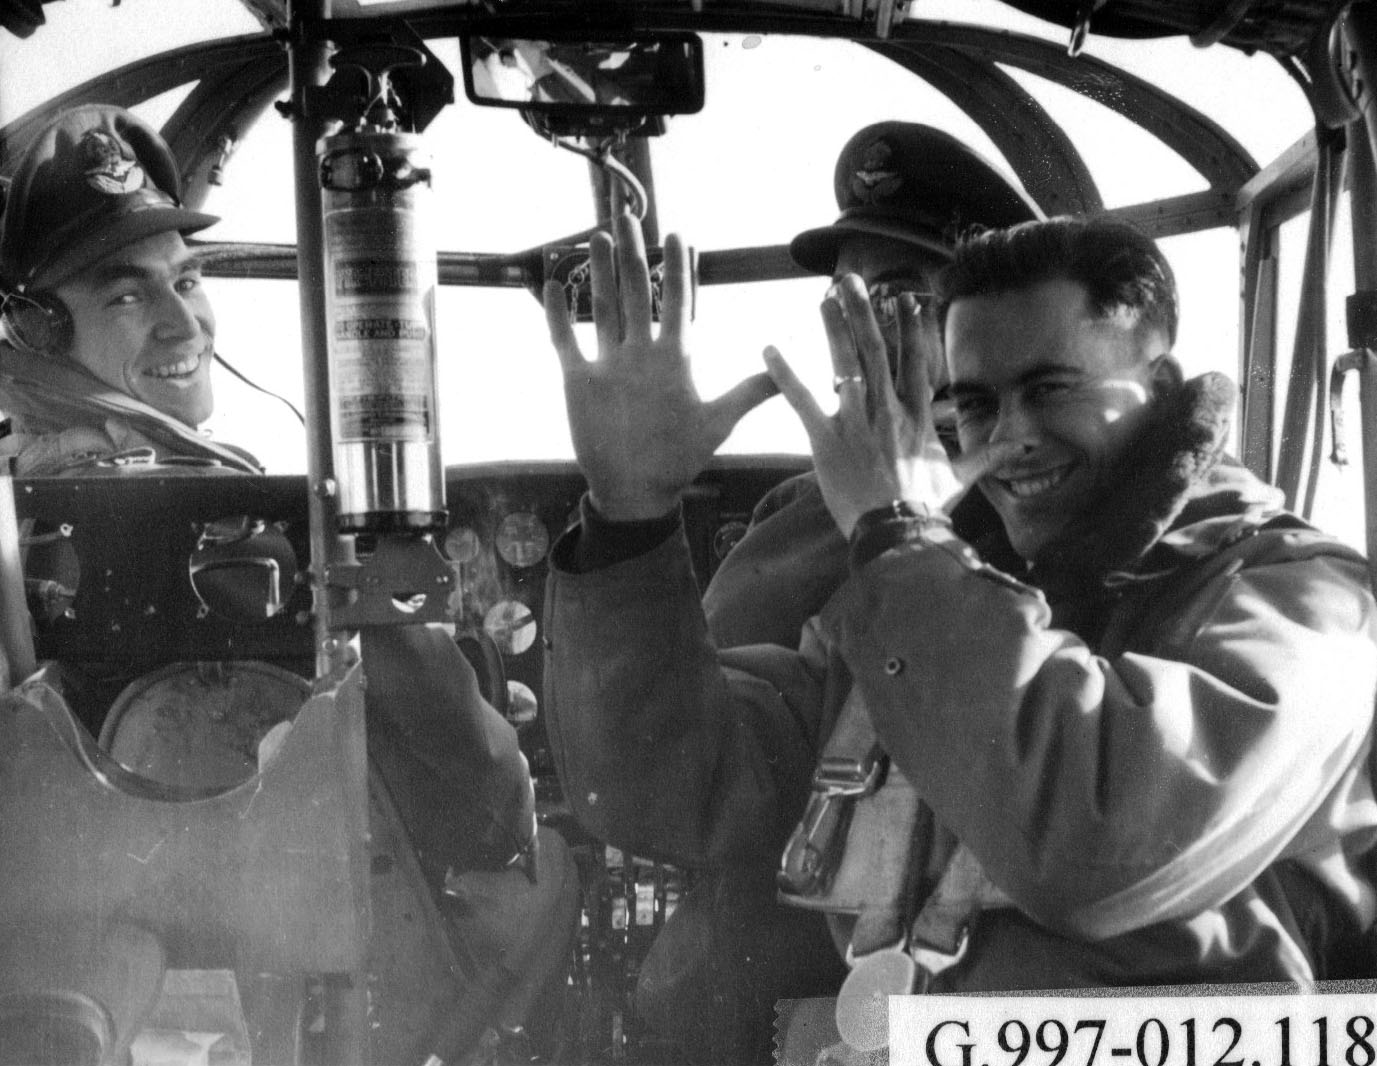 Deux pilotes des forces aériennes et un instructeur dans le poste de pilotage d’un avion, années 1940